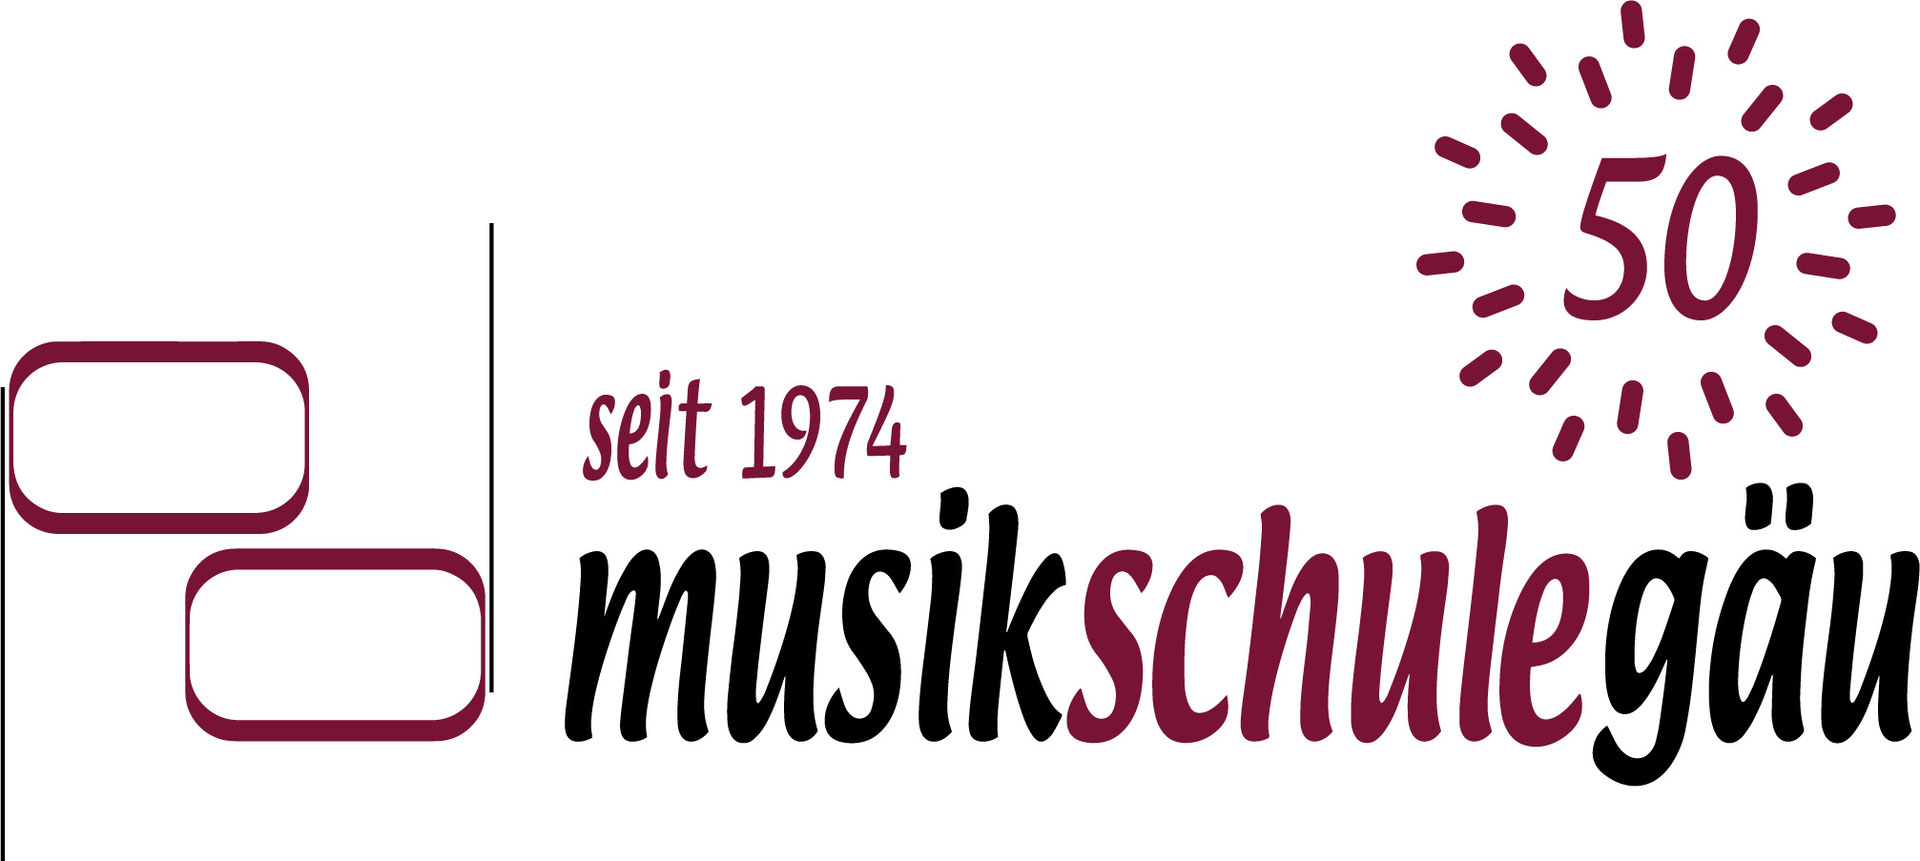 (c) Musikschule-gaeu.ch